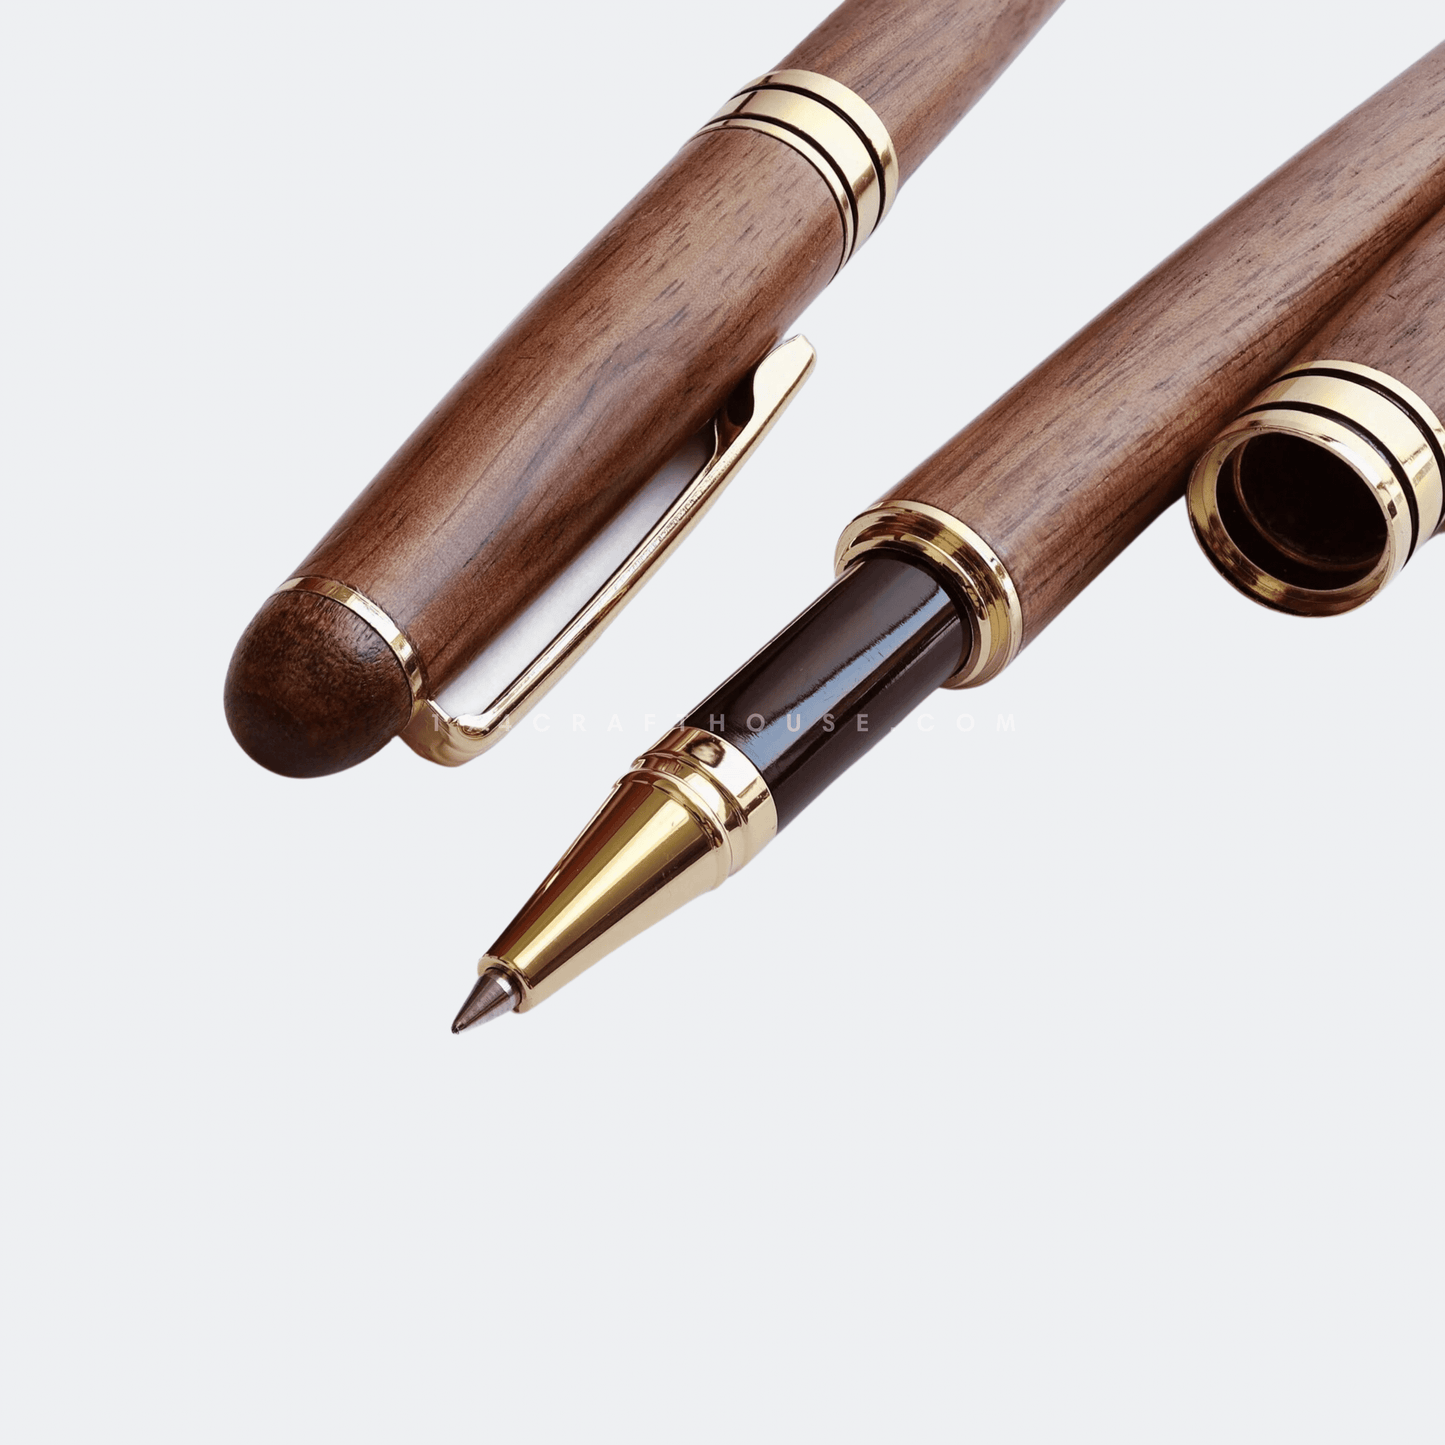 Custom Engraved Walnut Wooden Gel Pen Personalized Gift